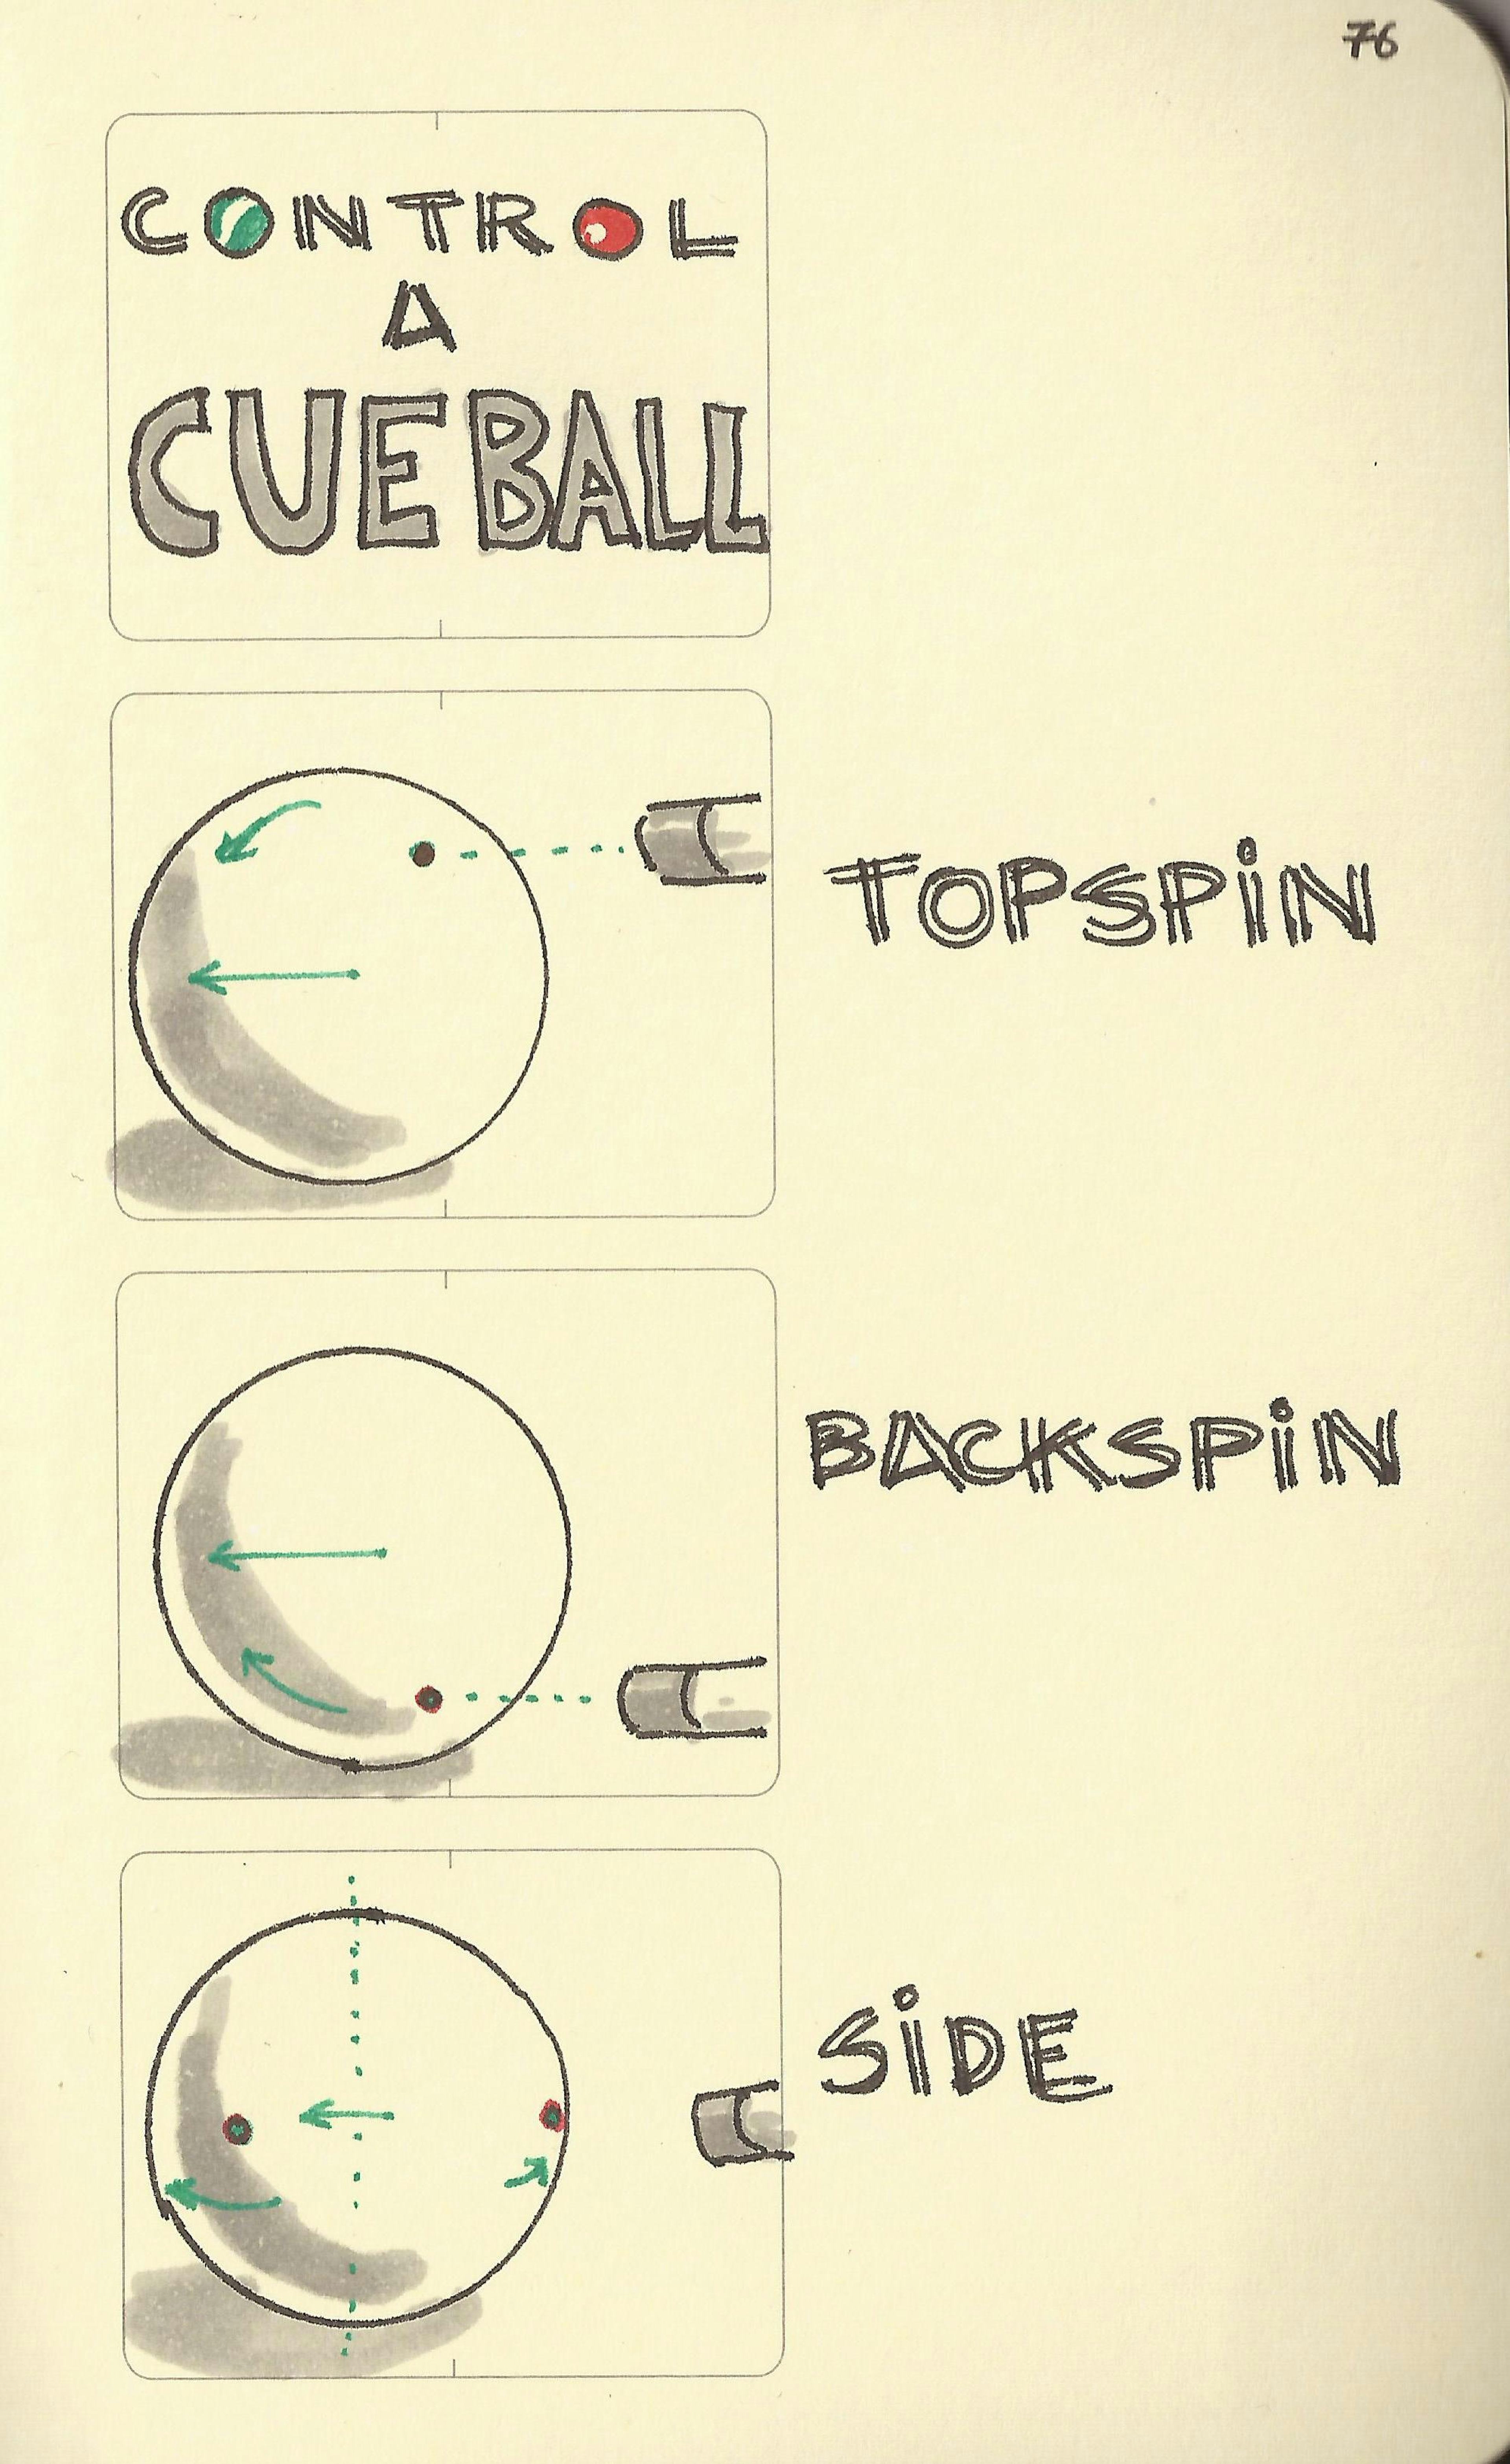 Control a cue ball - Sketchplanations